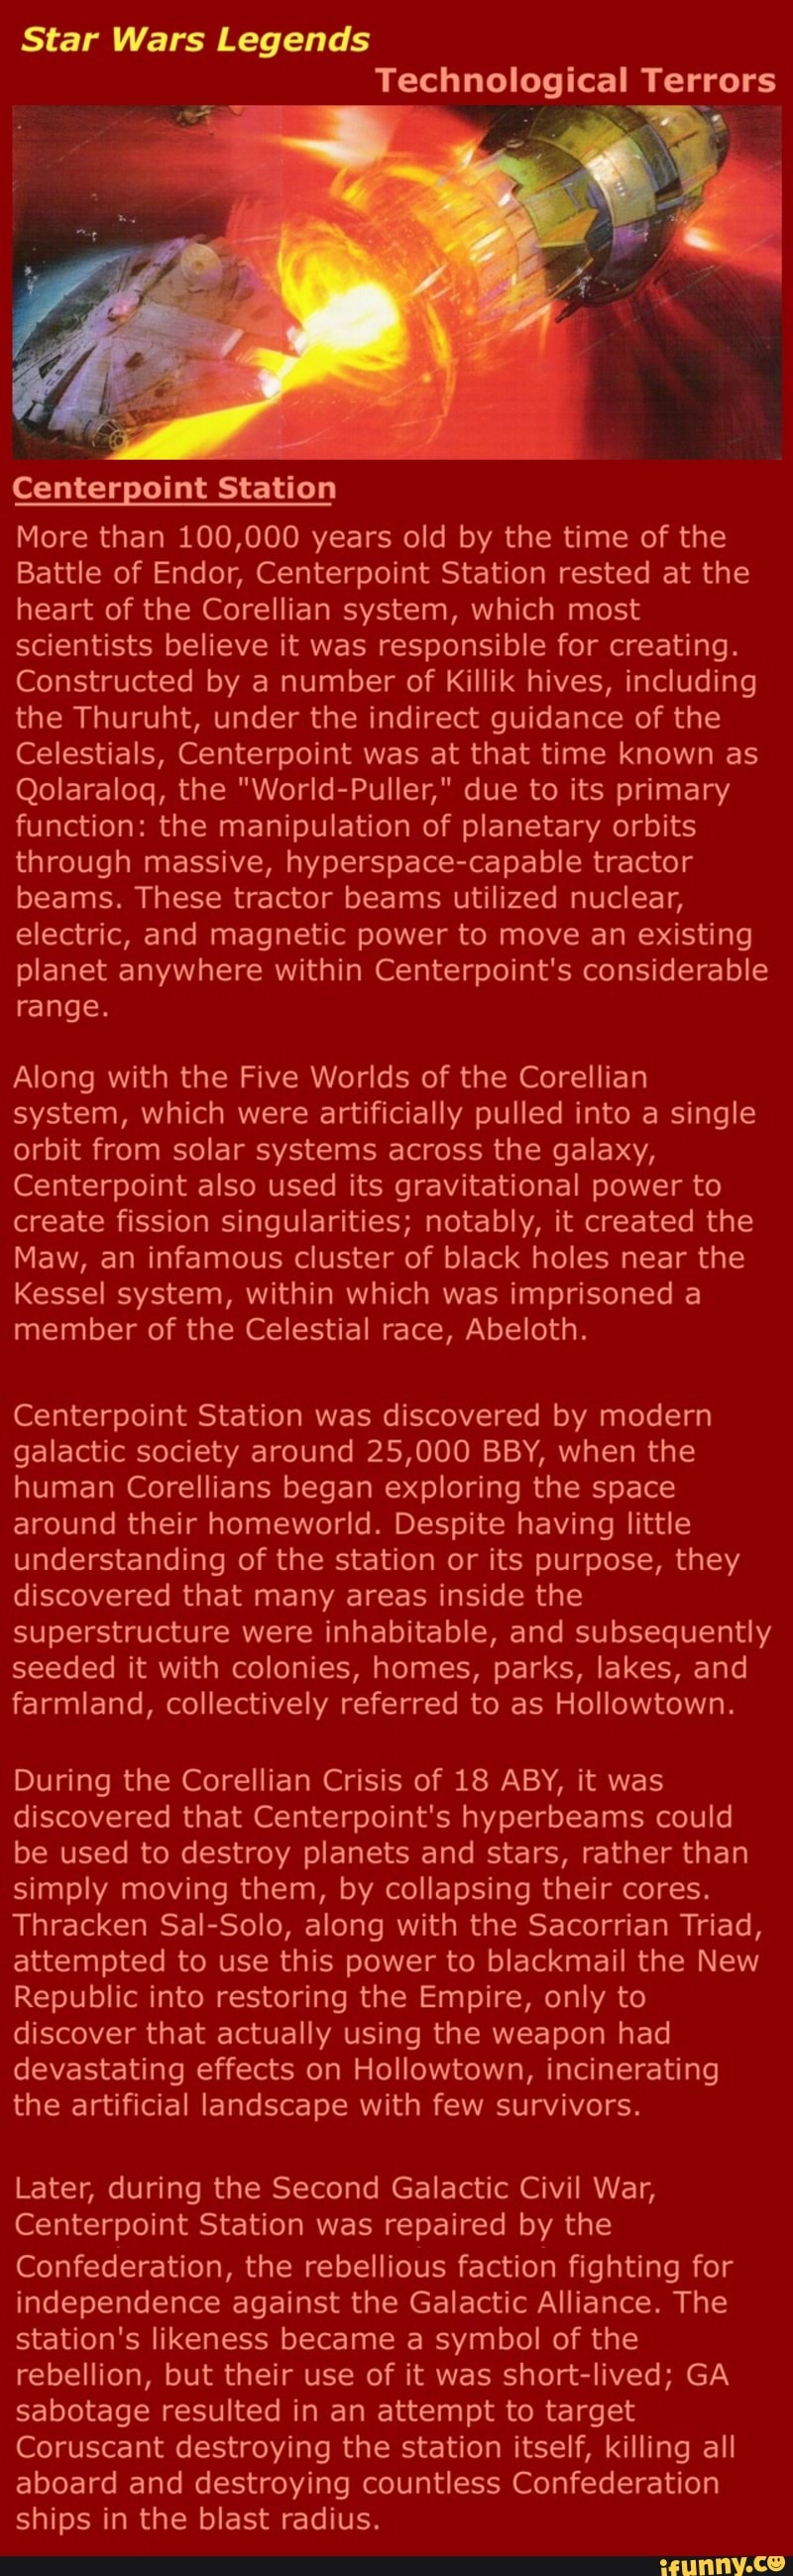 star wars centerpoint station